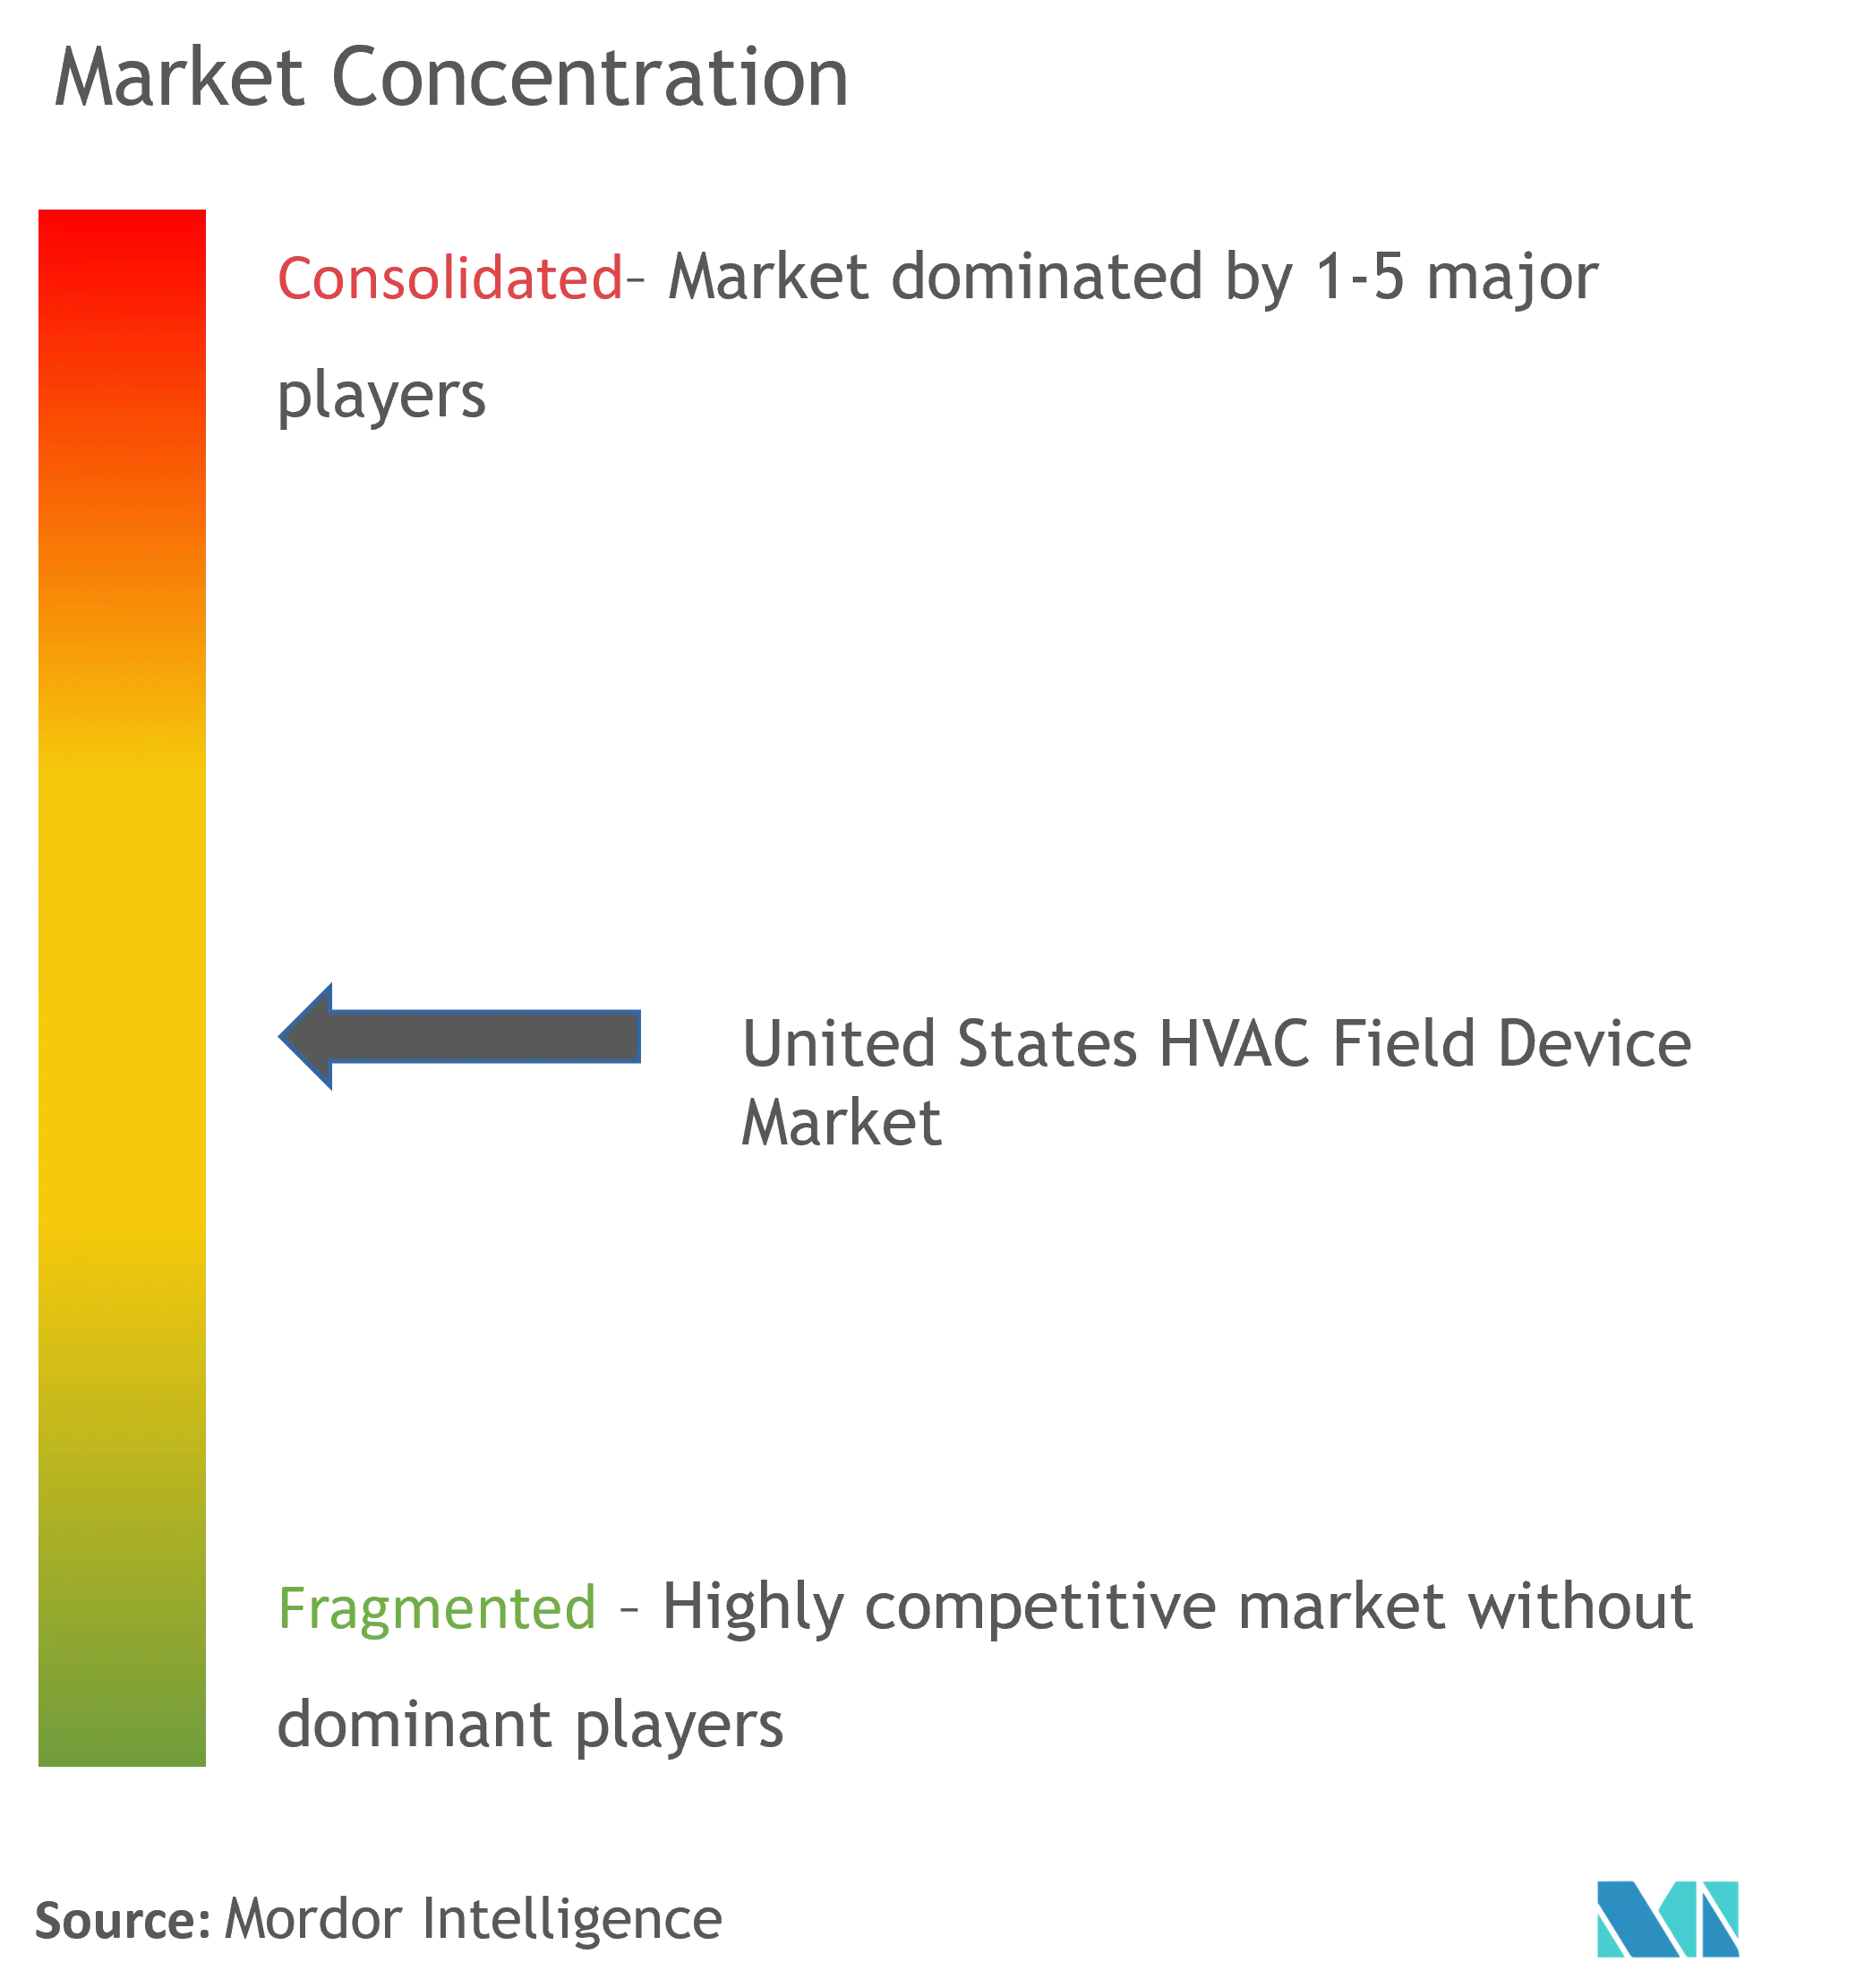 米国のHVACフィールドデバイス市場の集中度